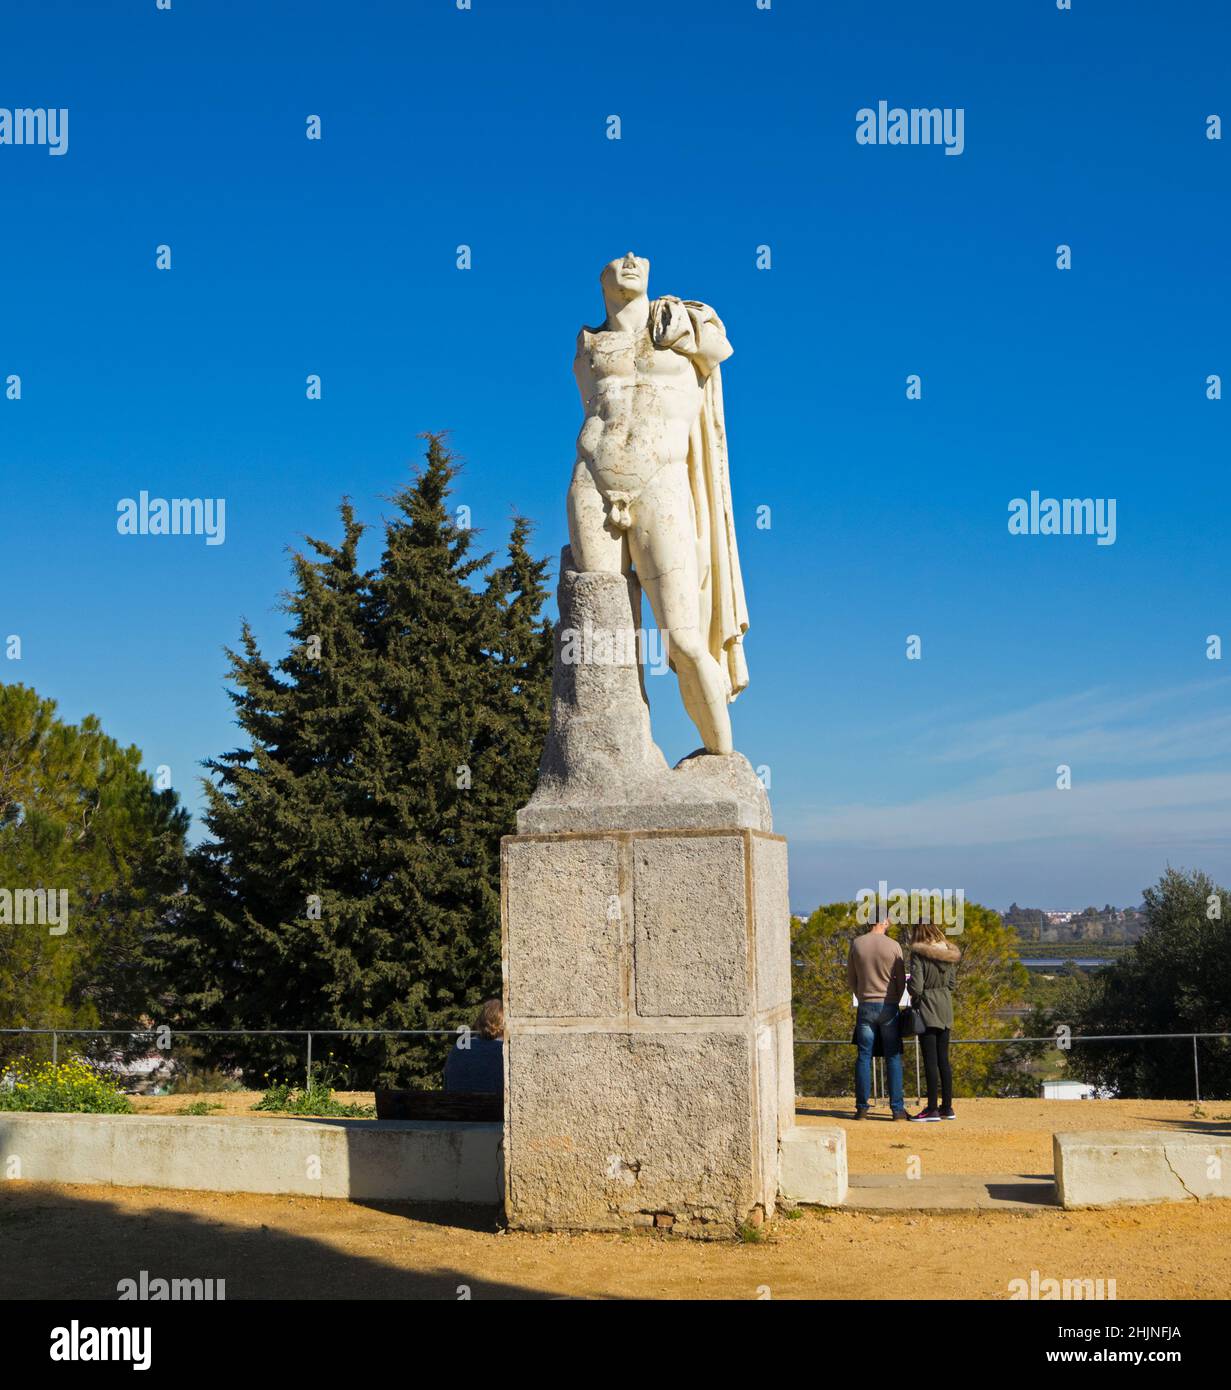 Römischen Stadt Italica, in der Nähe von Santiponce, Provinz Sevilla, Andalusien, Südspanien.  Reproduktion der heroische Statue des Kaisers Trajan.  Die ori Stockfoto